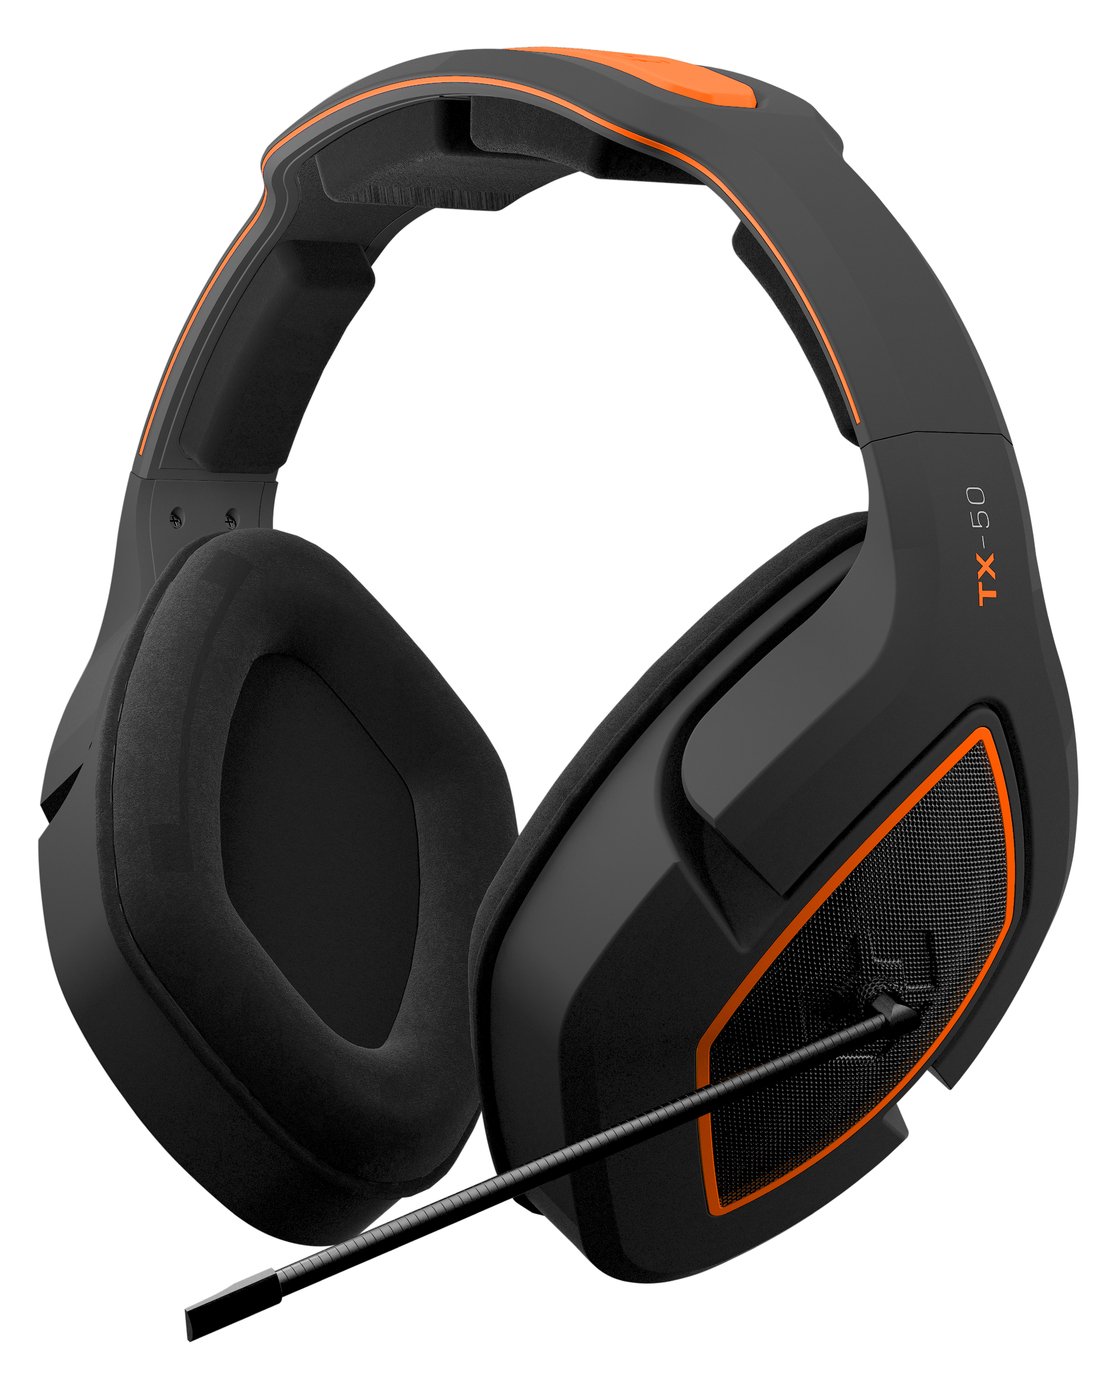 orange ps4 headset